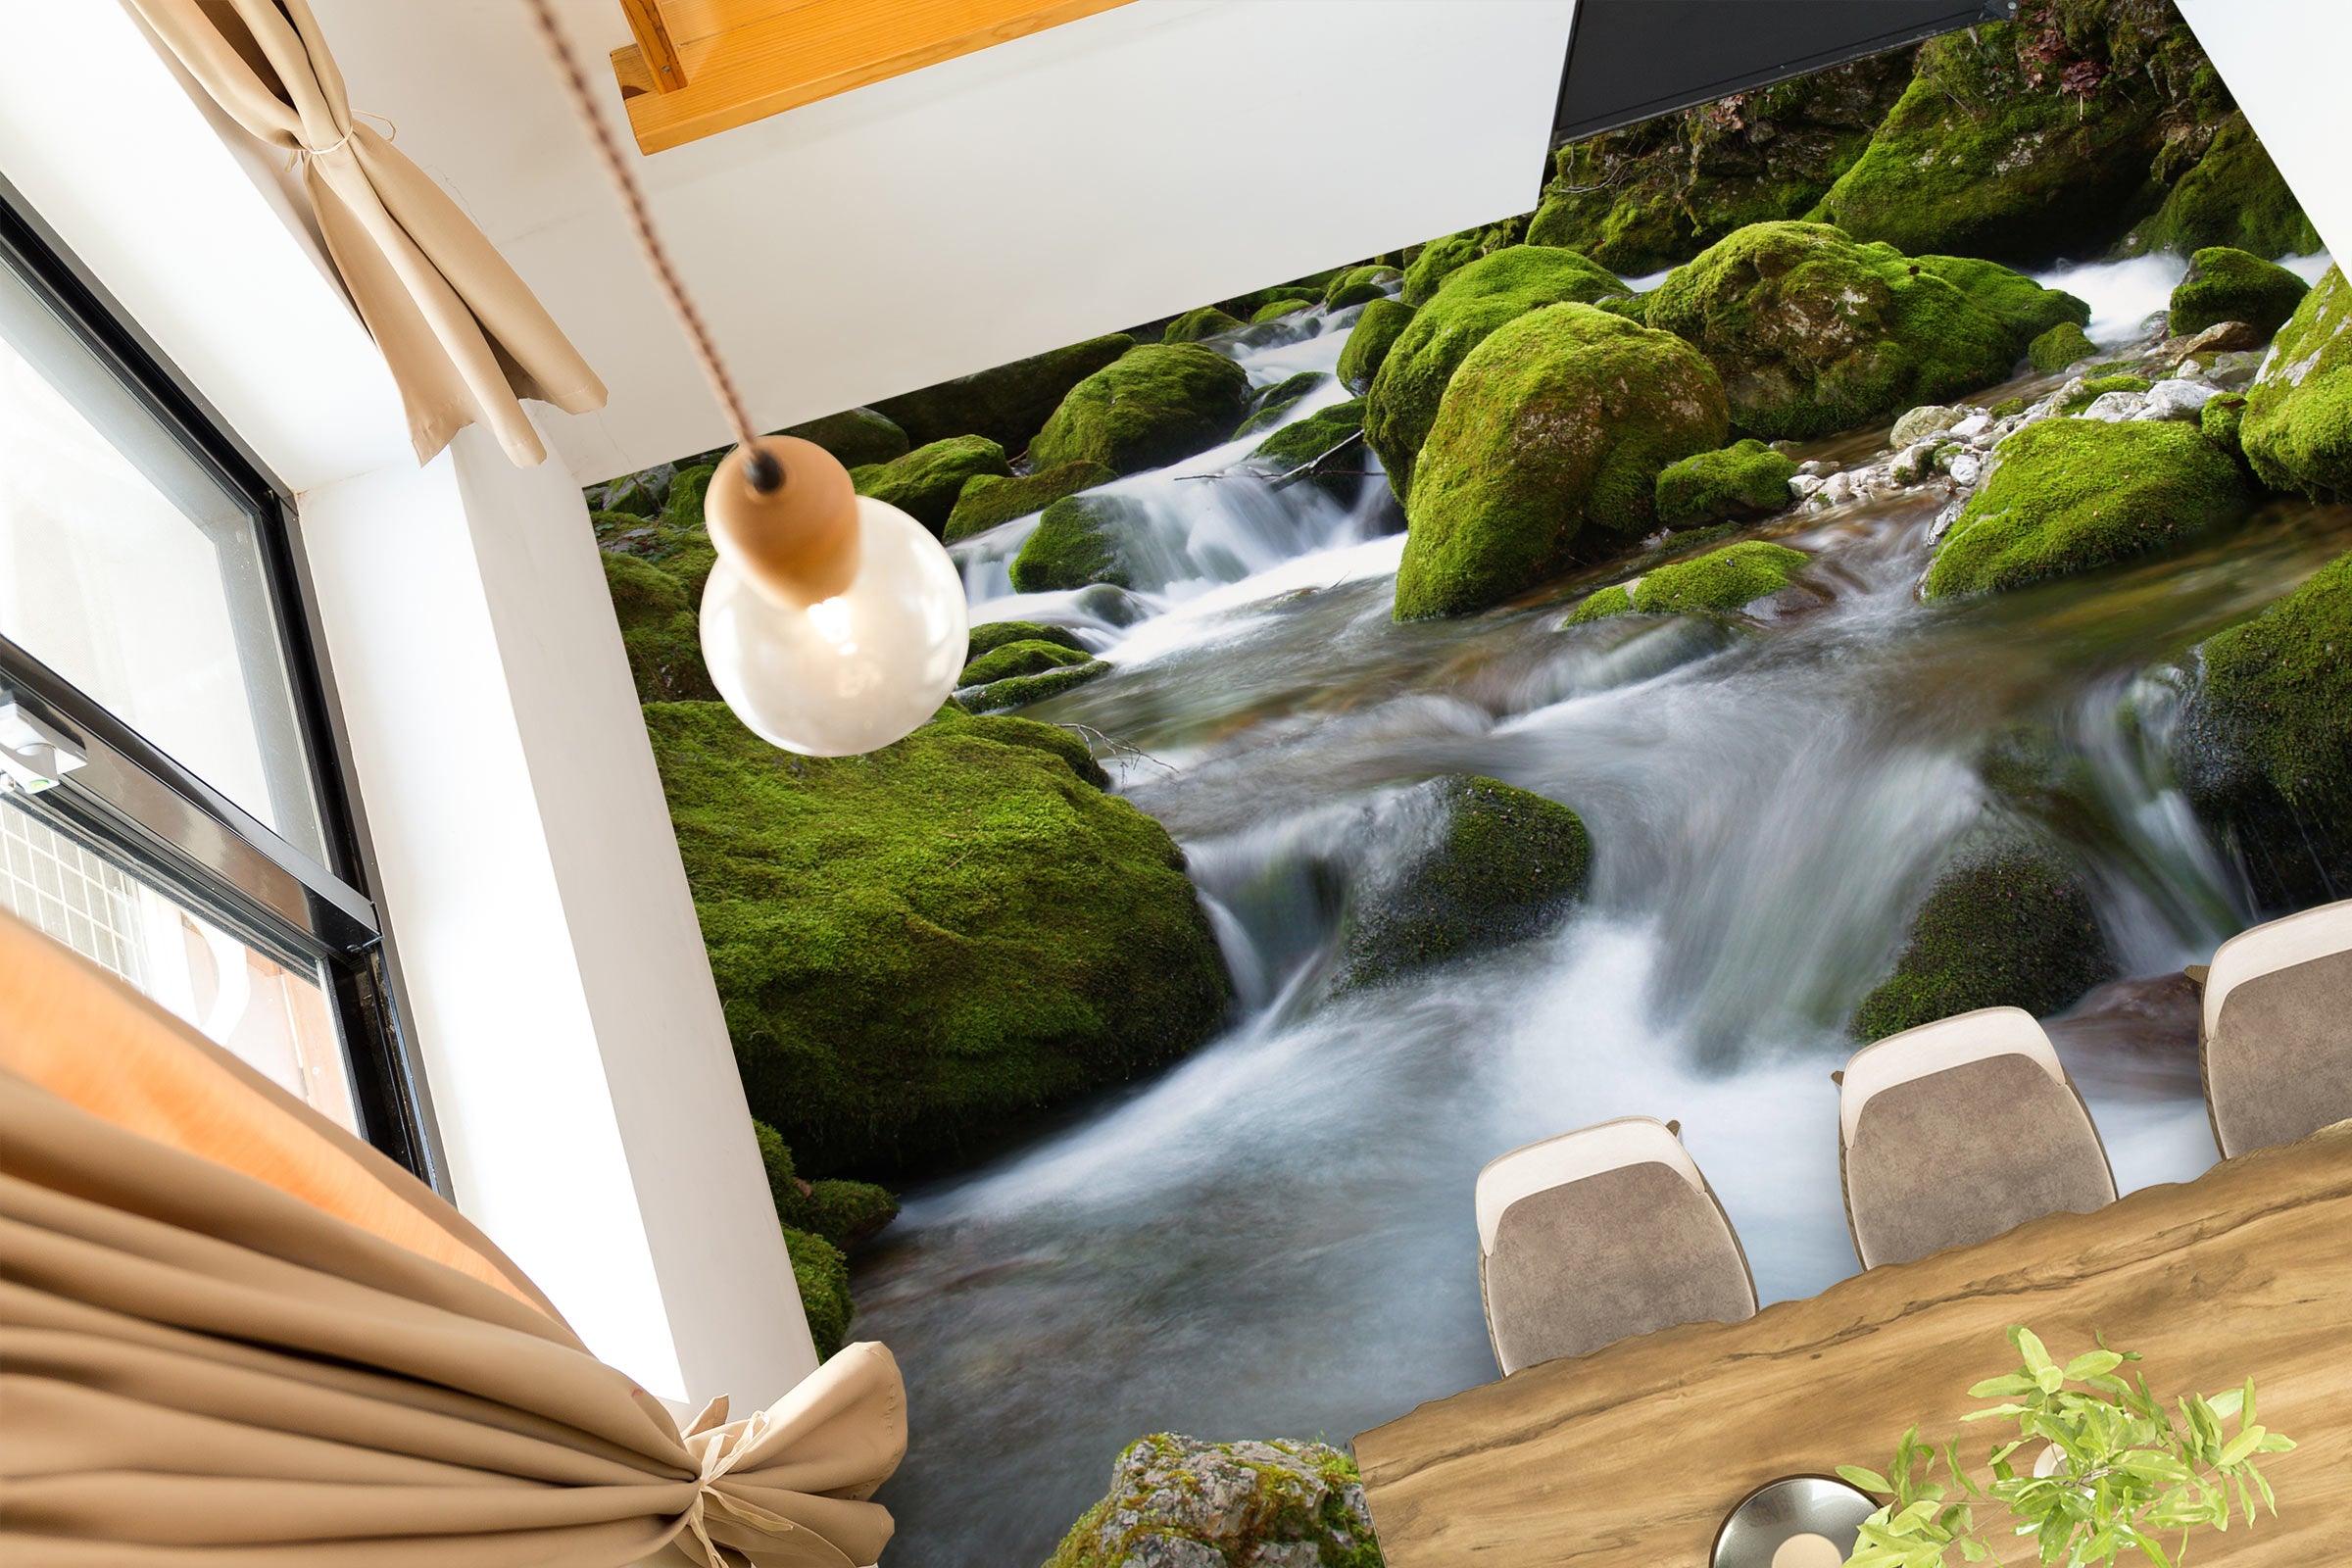 3D Green Stones And Running Water 609 Floor Mural  Wallpaper Murals Rug & Mat Print Epoxy waterproof bath floor